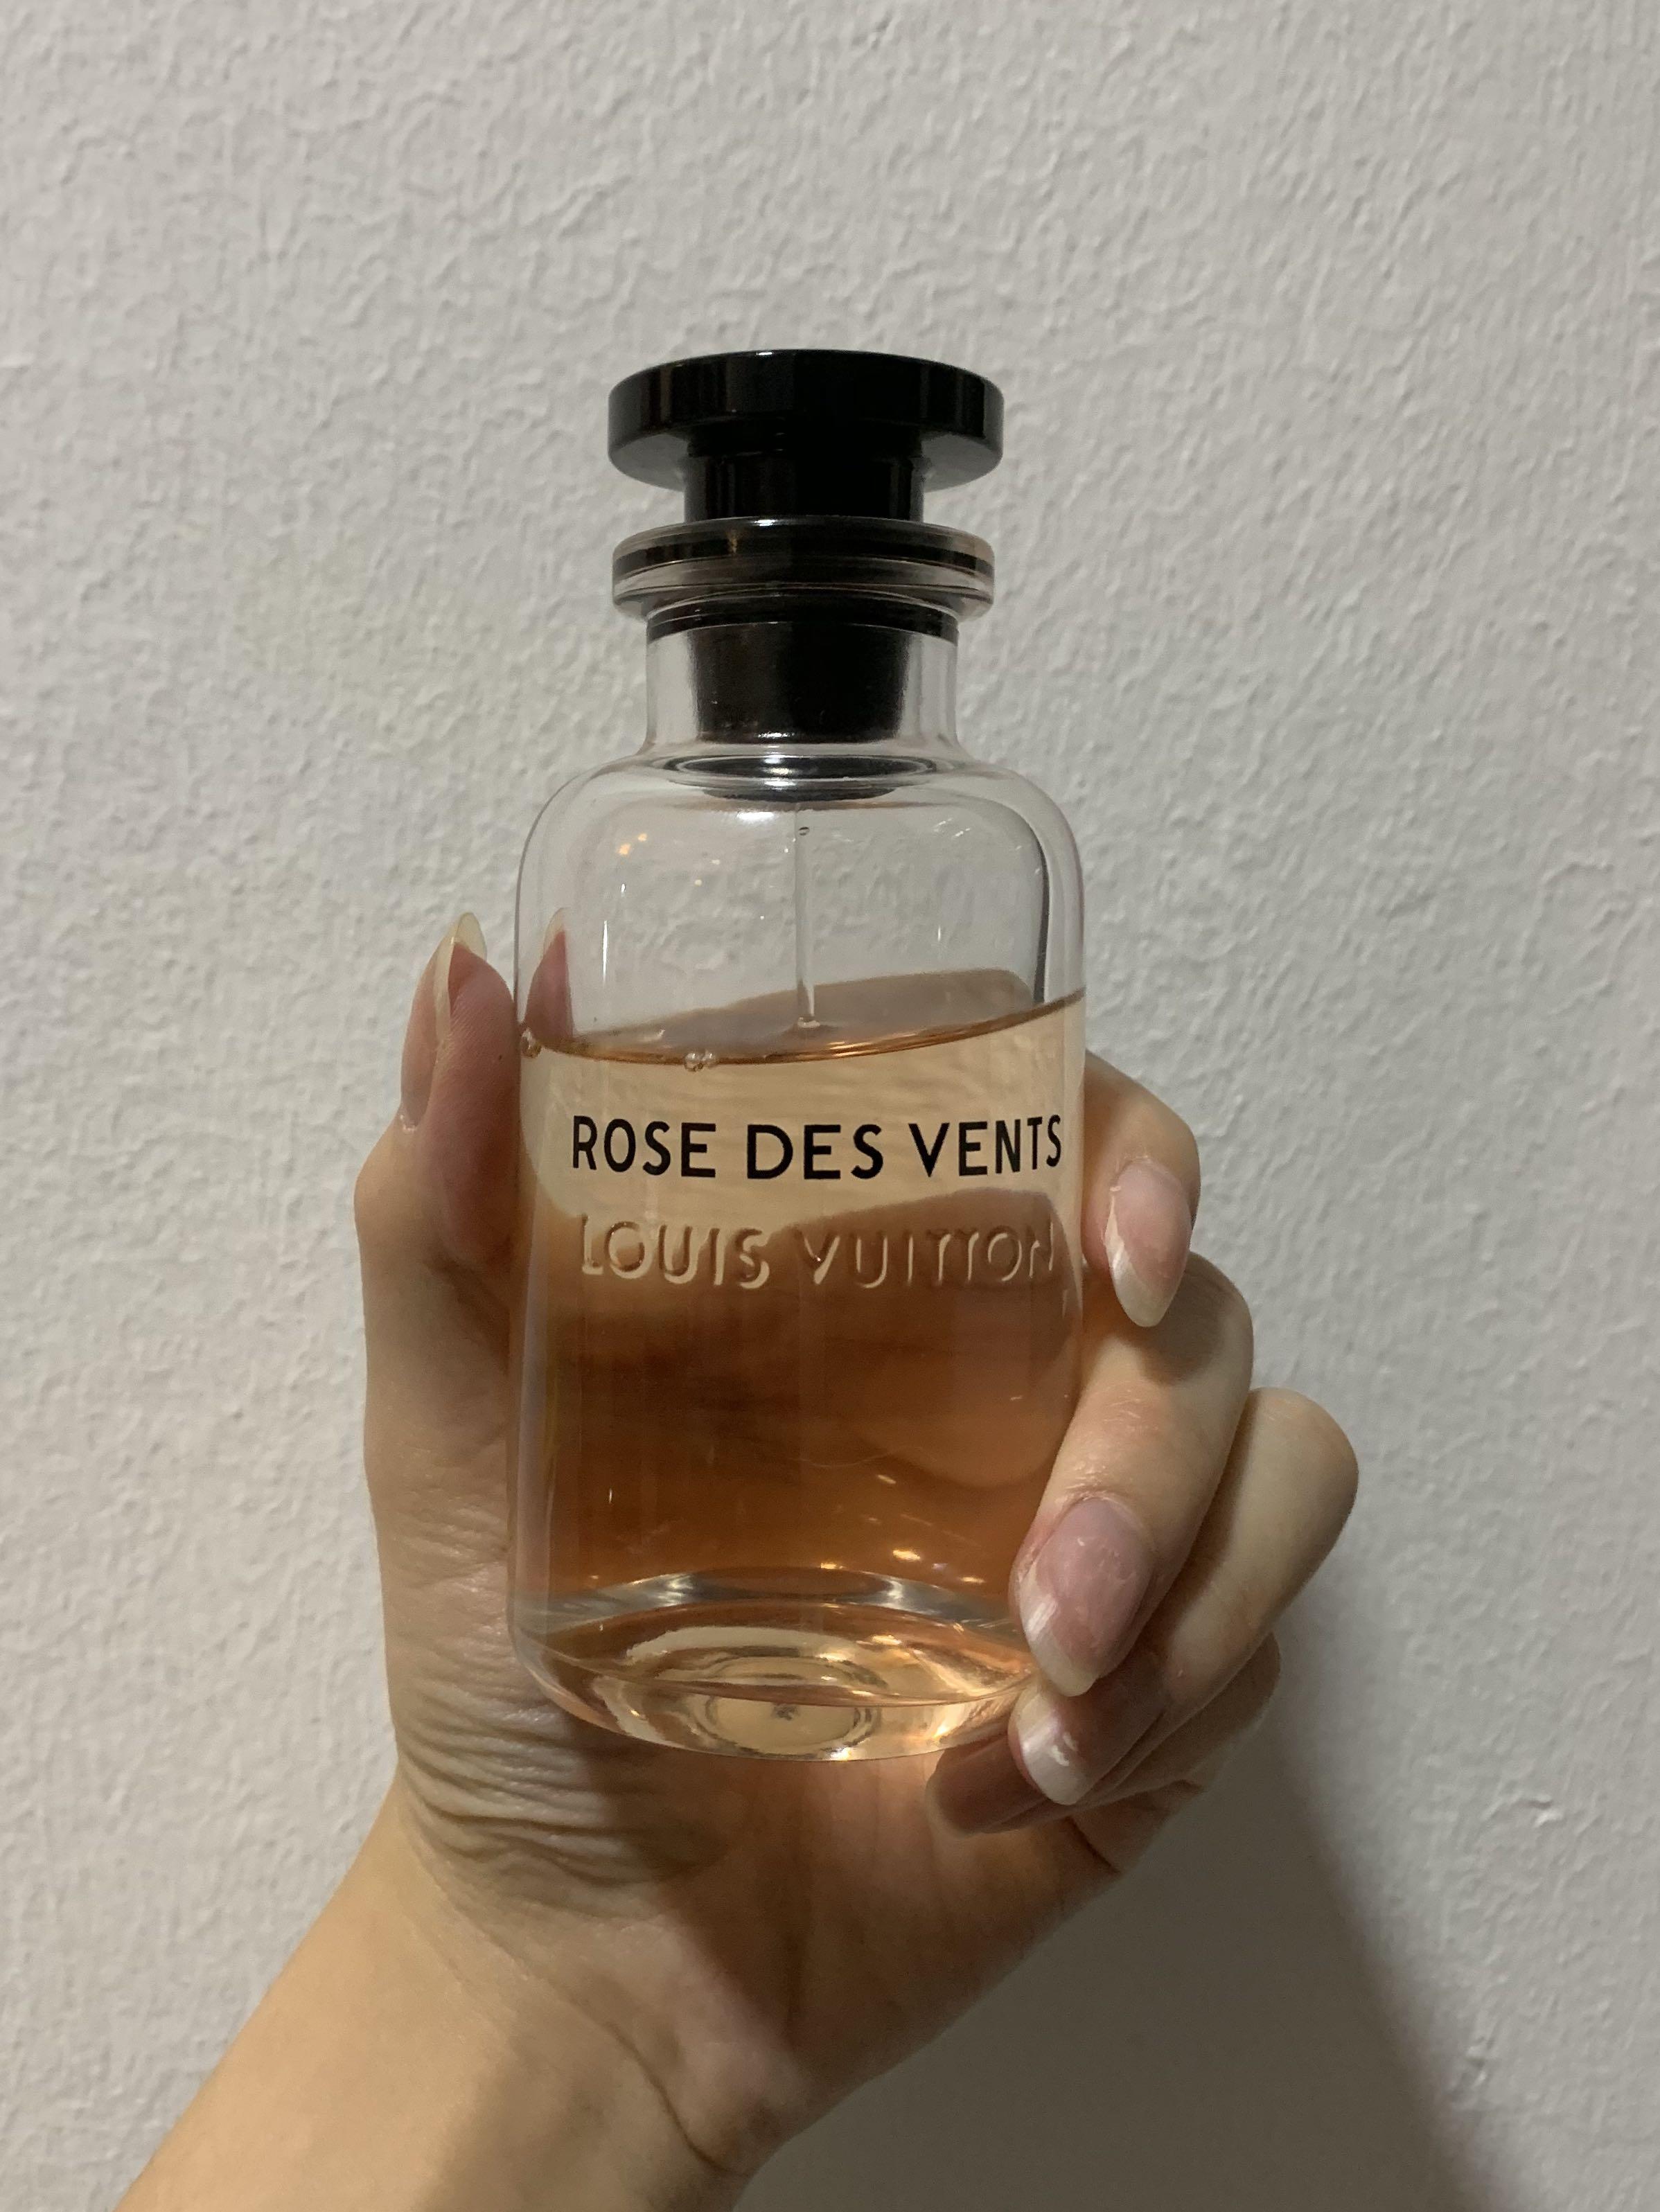 rose de vents louis vuitton perfume